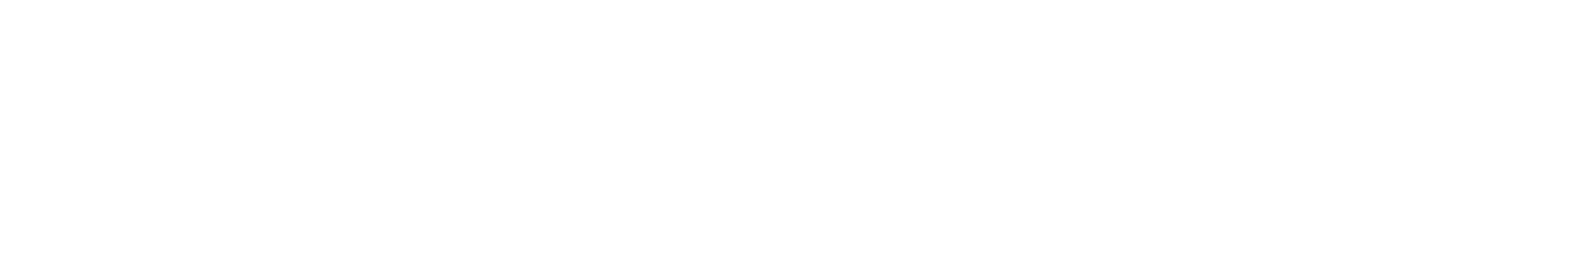 鹿果數位溝通有限公司Logo圖